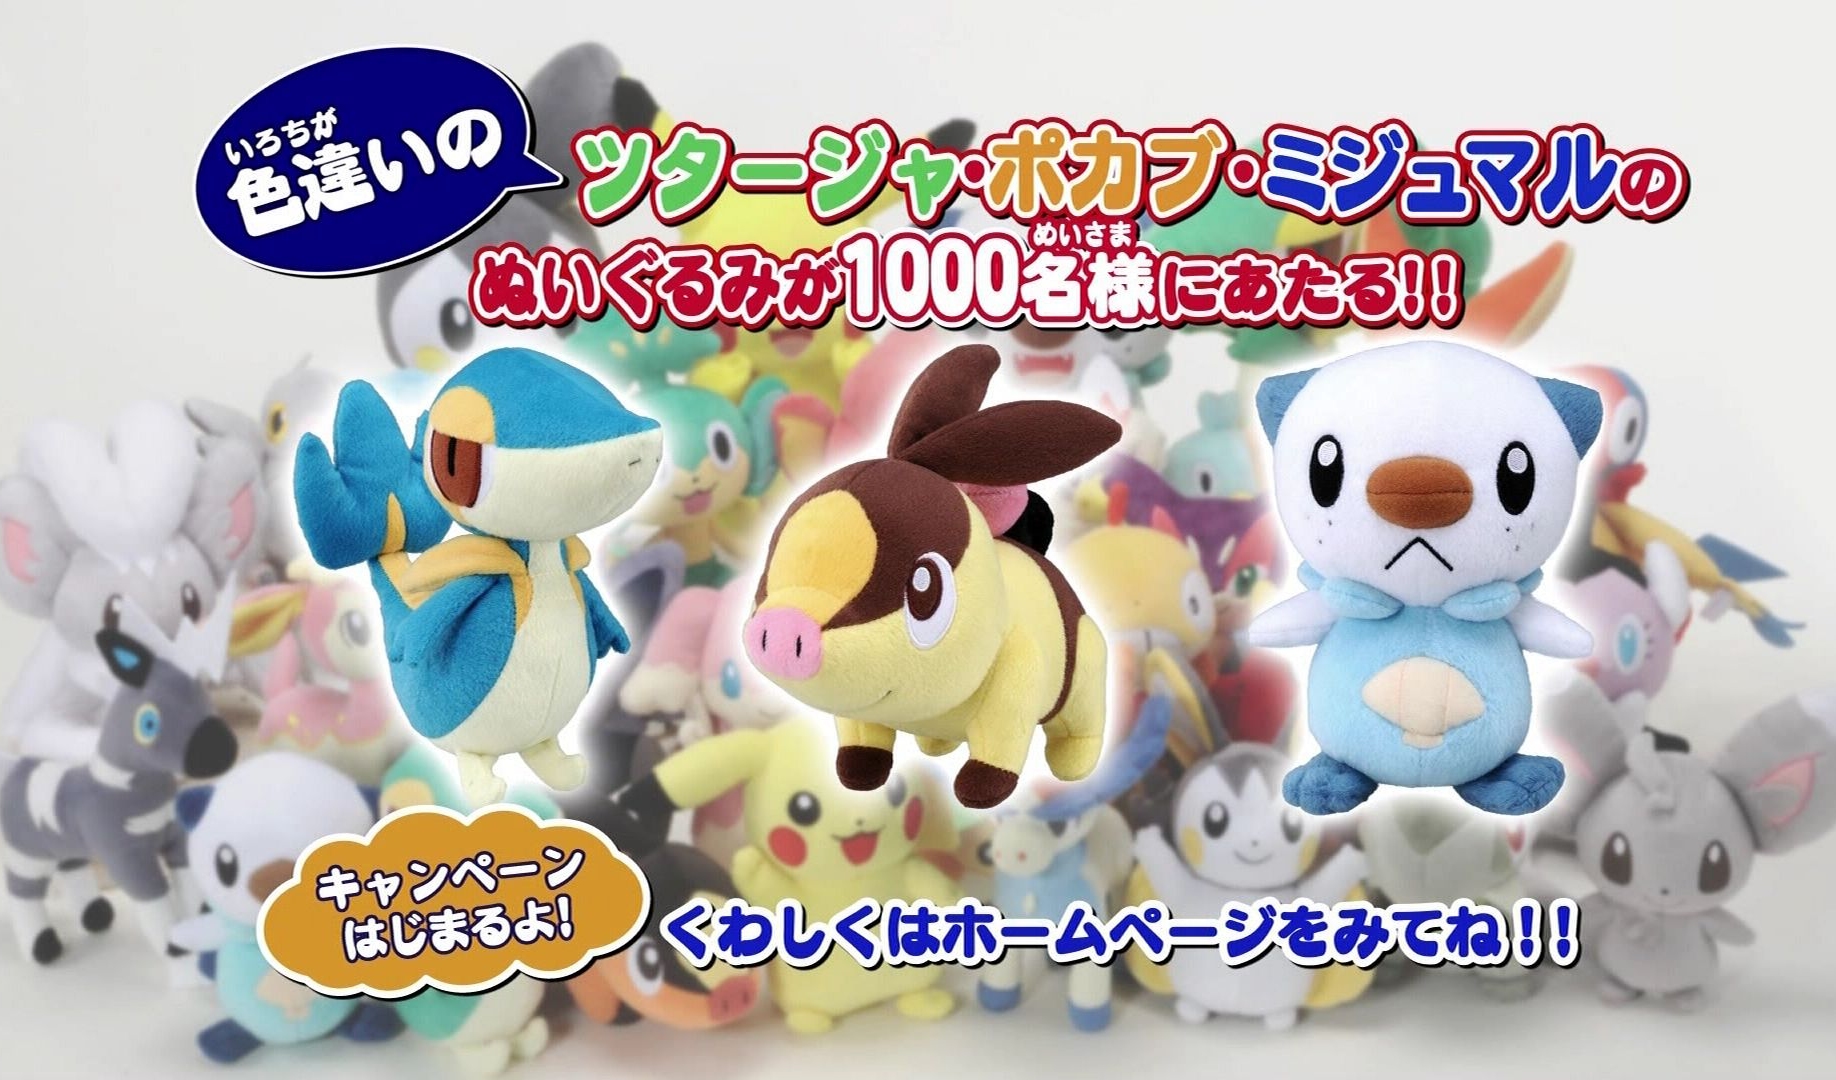 shiny pokemon stuffed animals